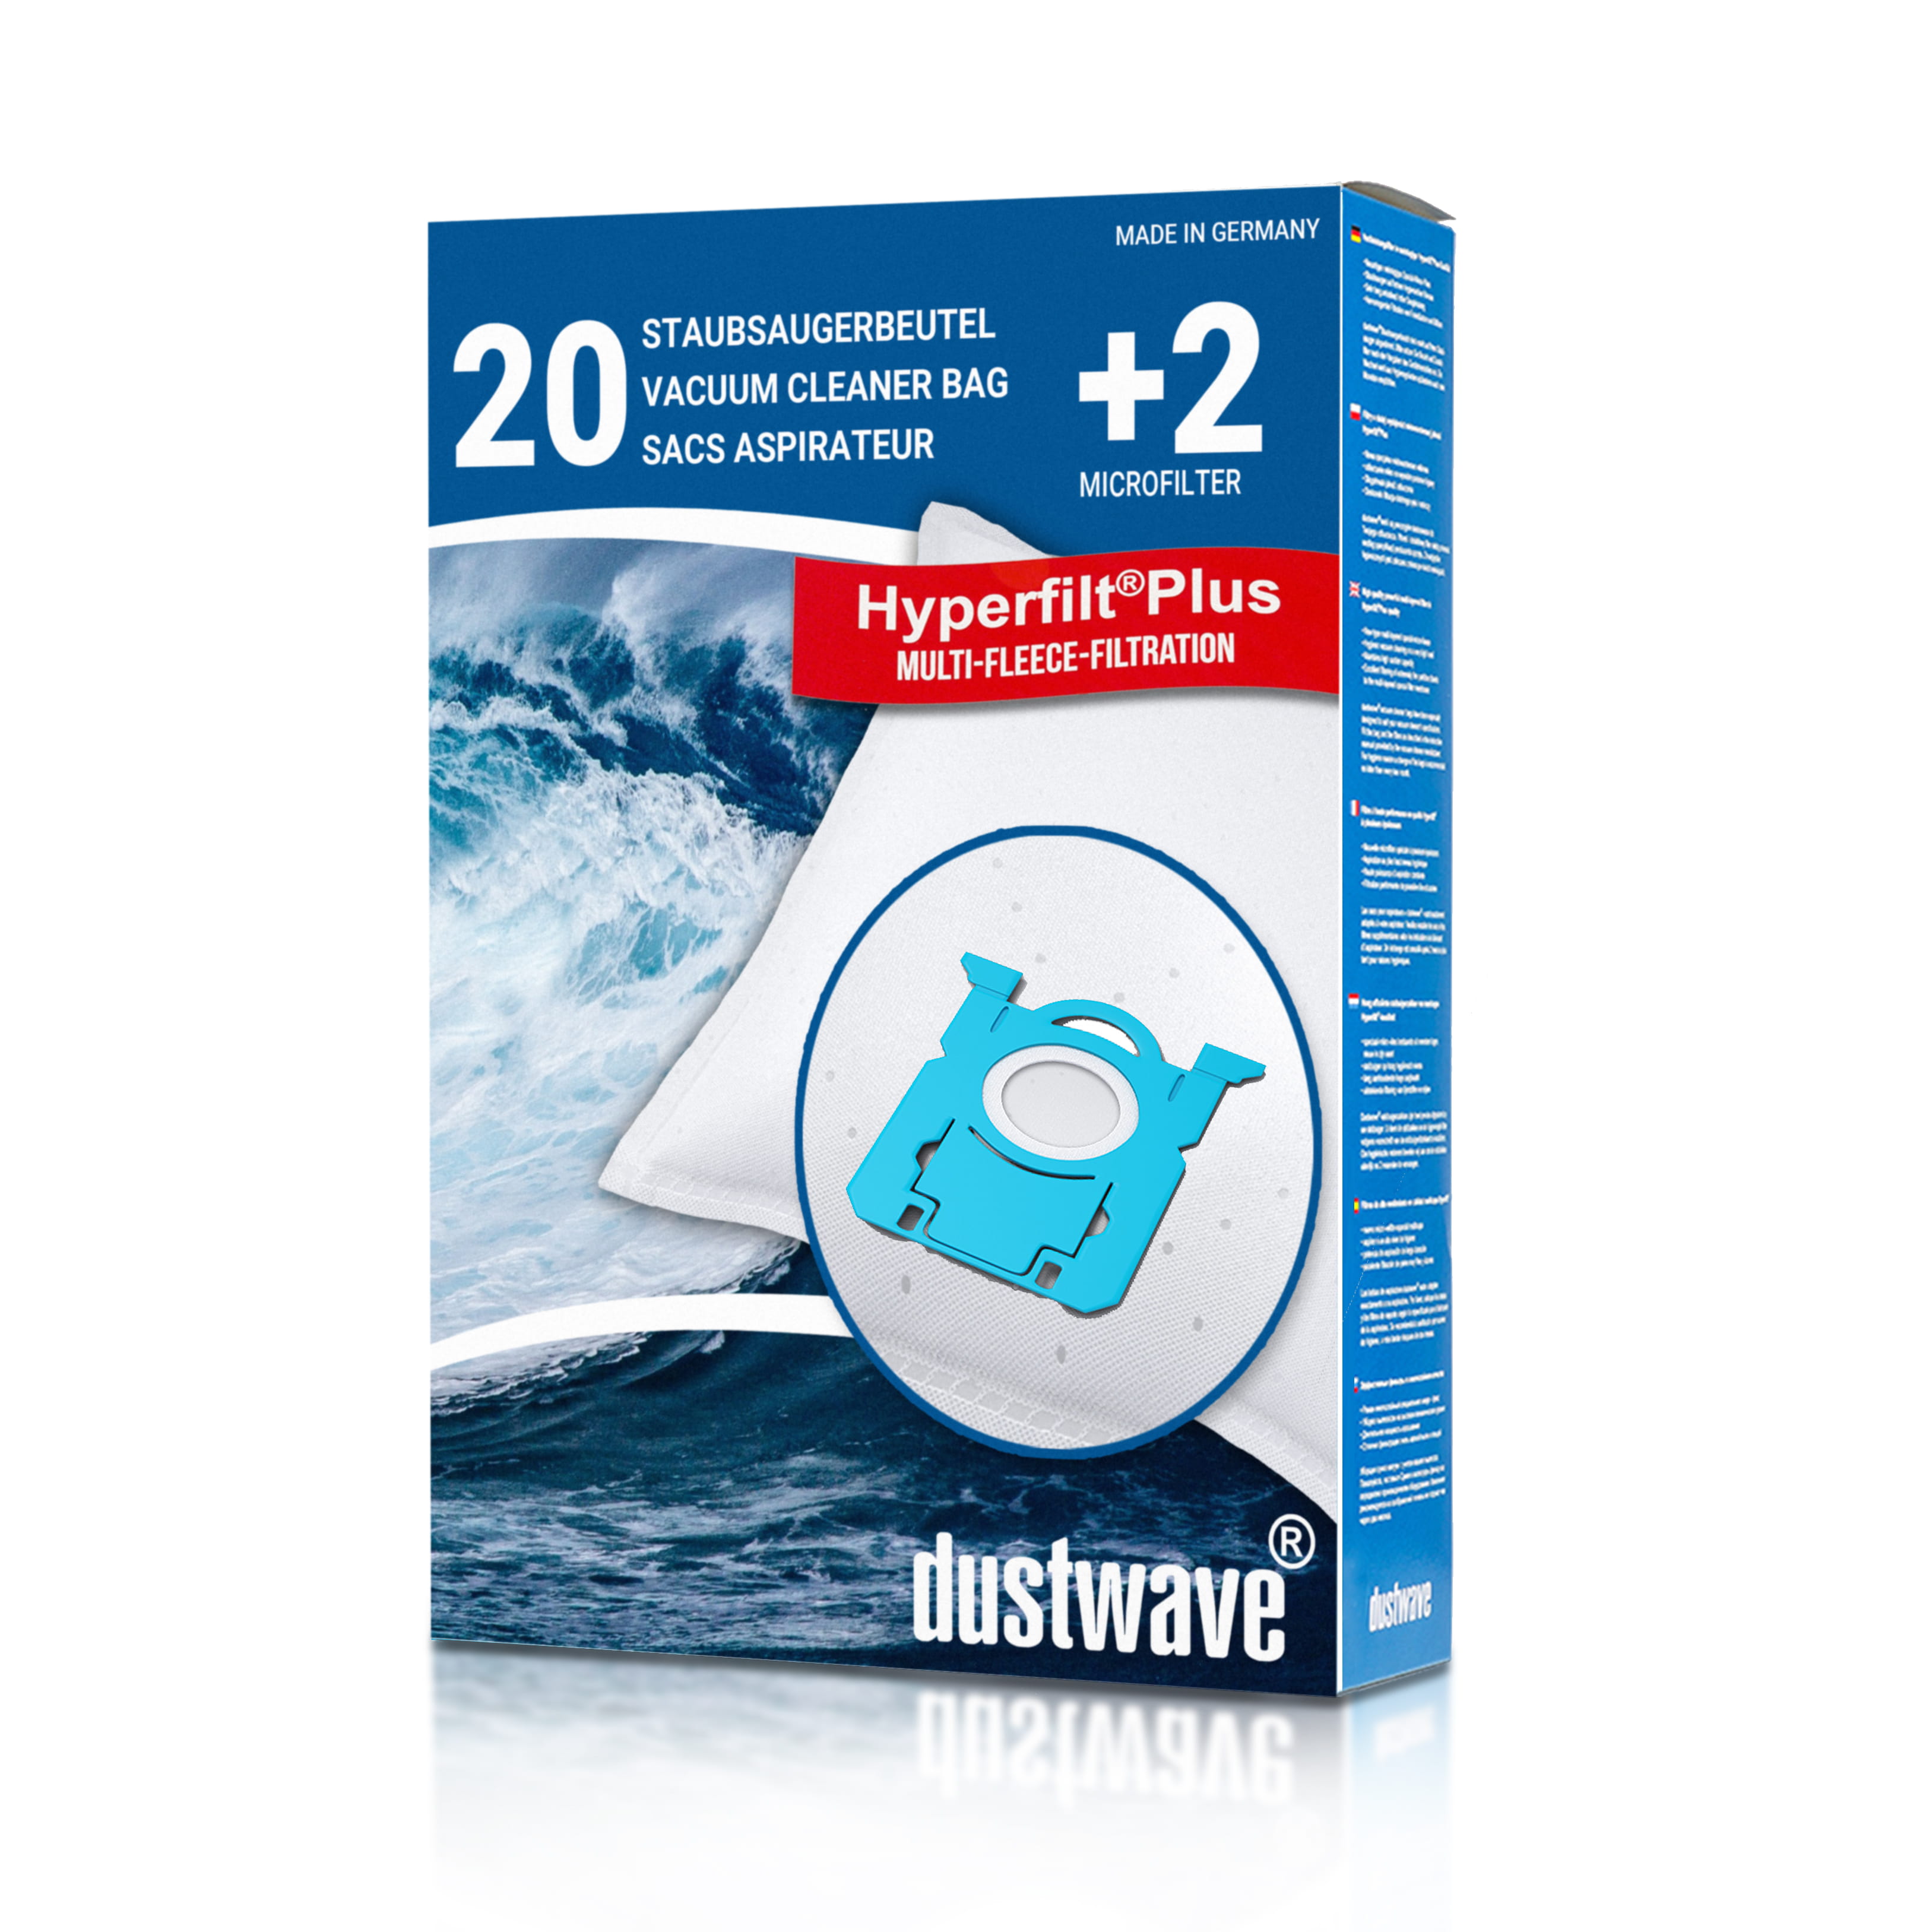 Dustwave® 20 Staubsaugerbeutel für AEG VX6-2-FFP - hocheffizient, mehrlagiges Mikrovlies mit Hygieneverschluss - Made in Germany